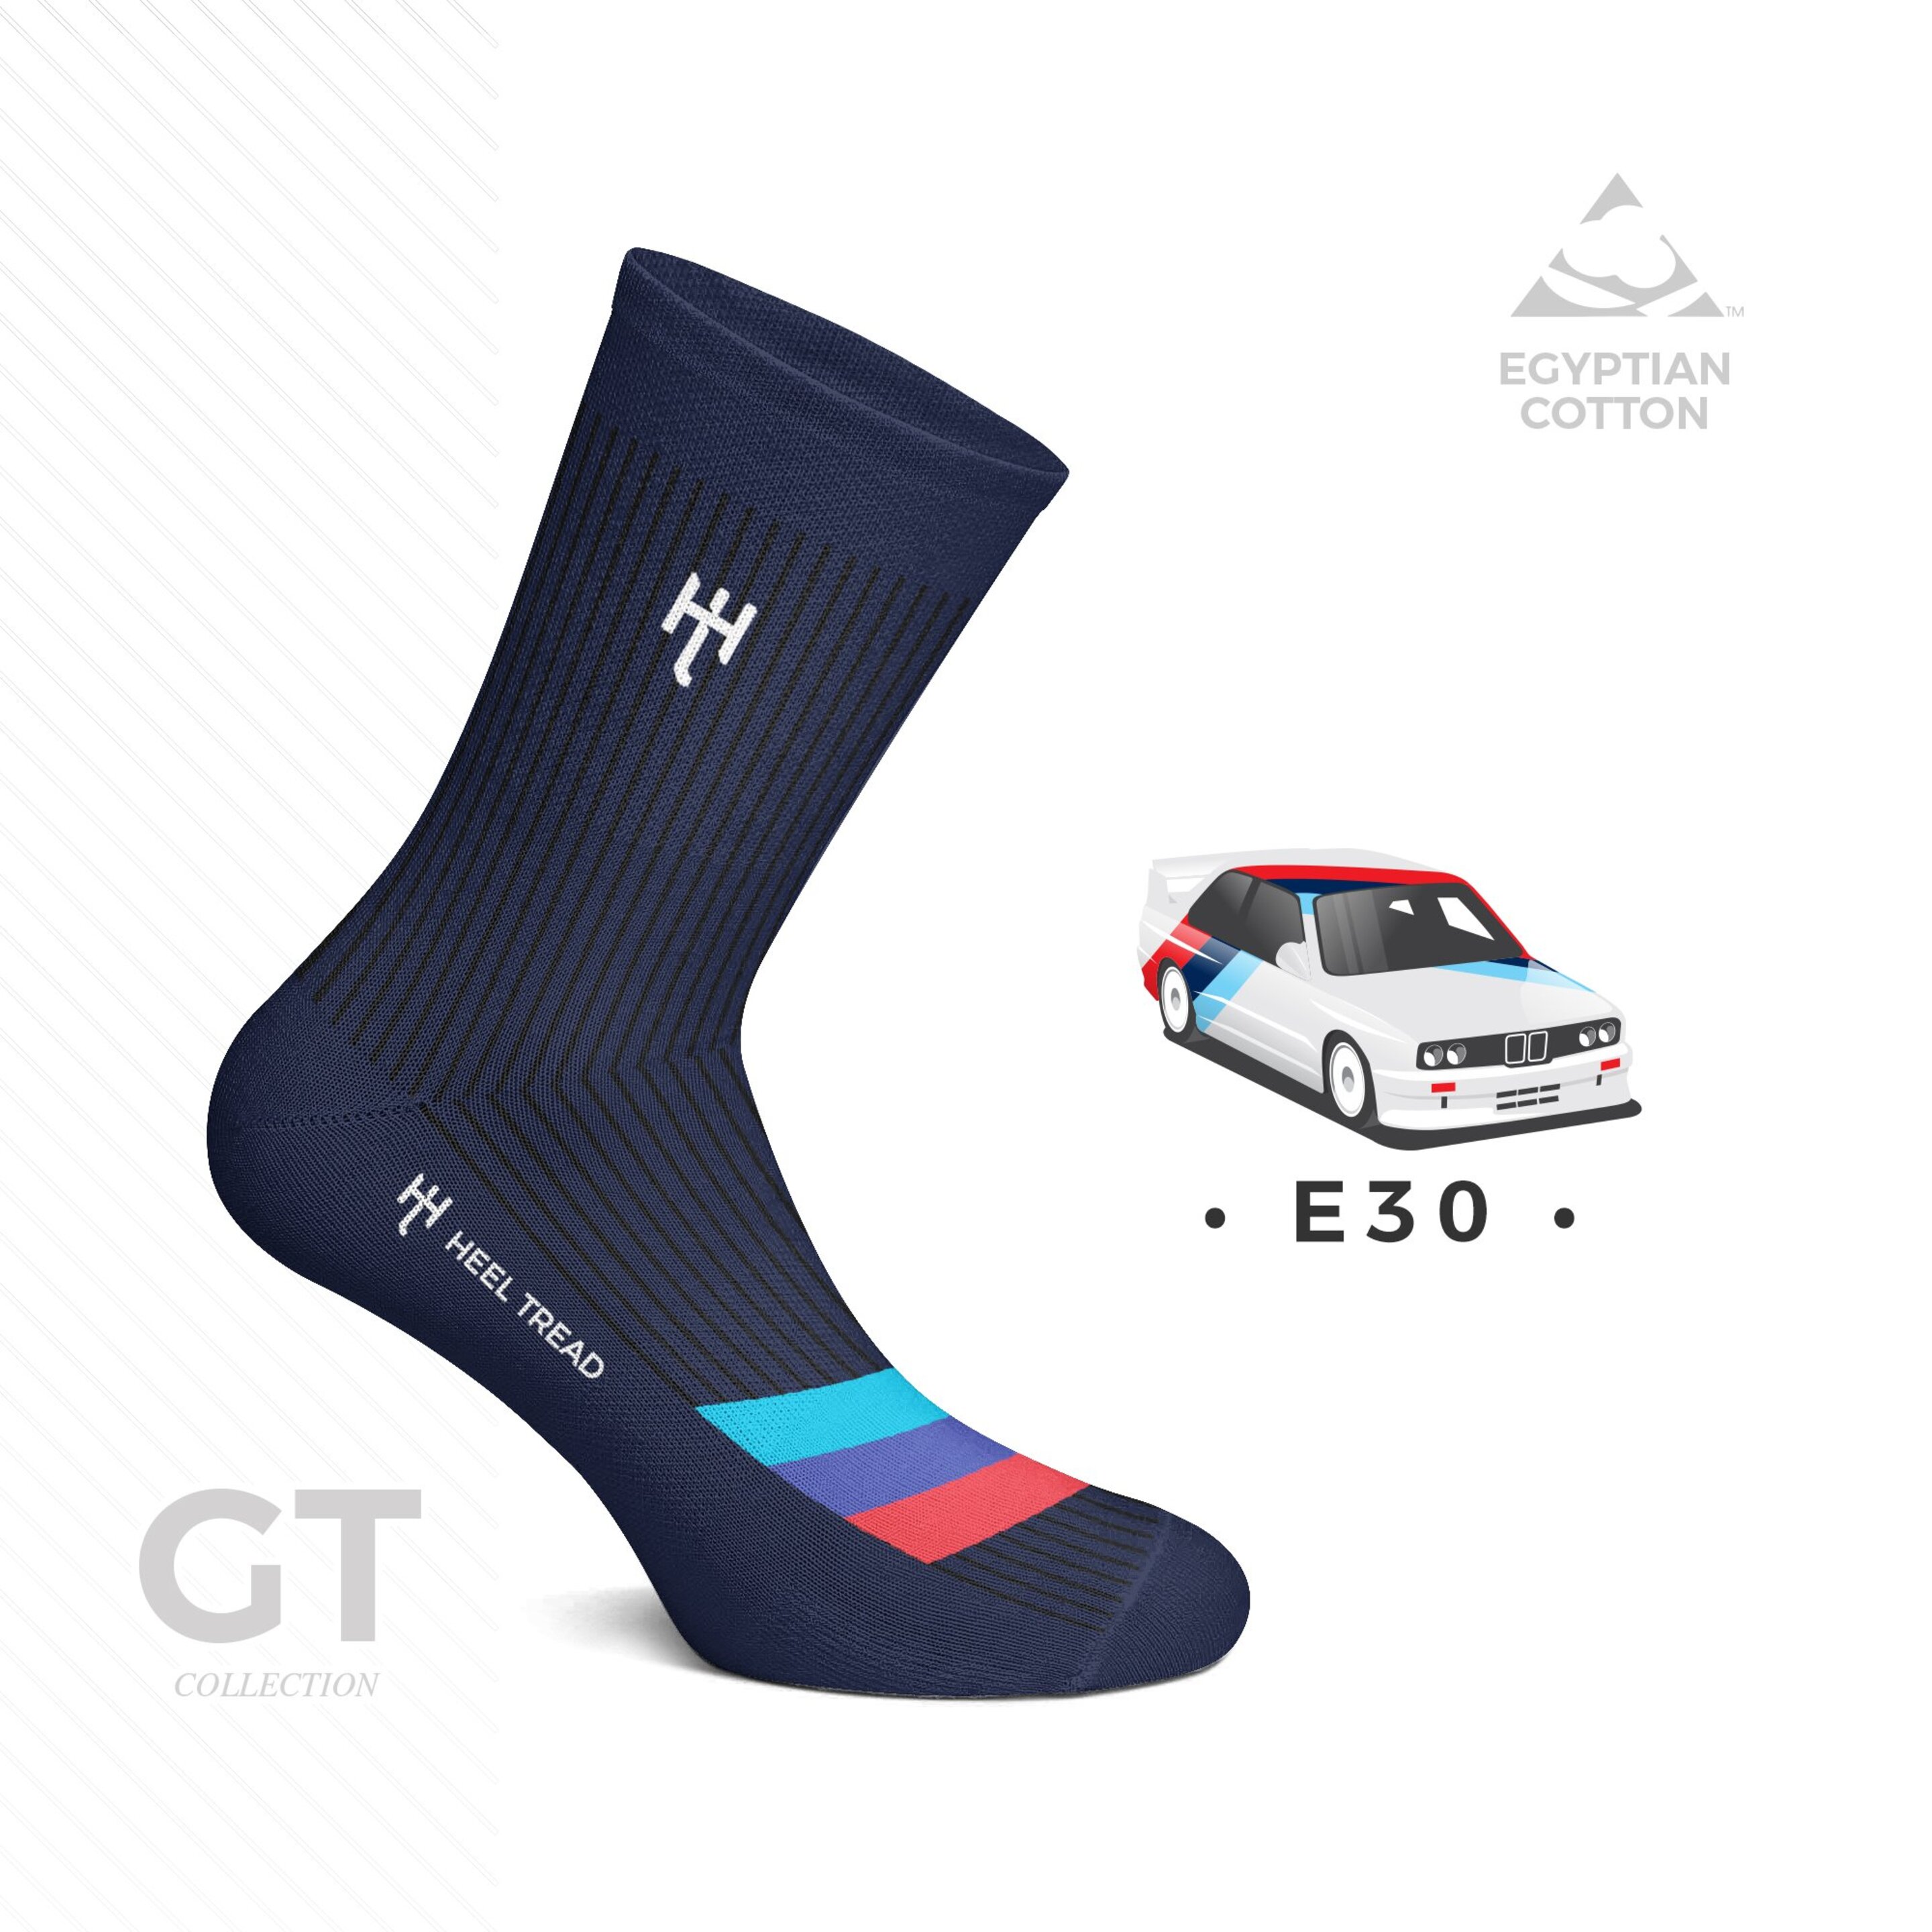 E30 Gt Socks